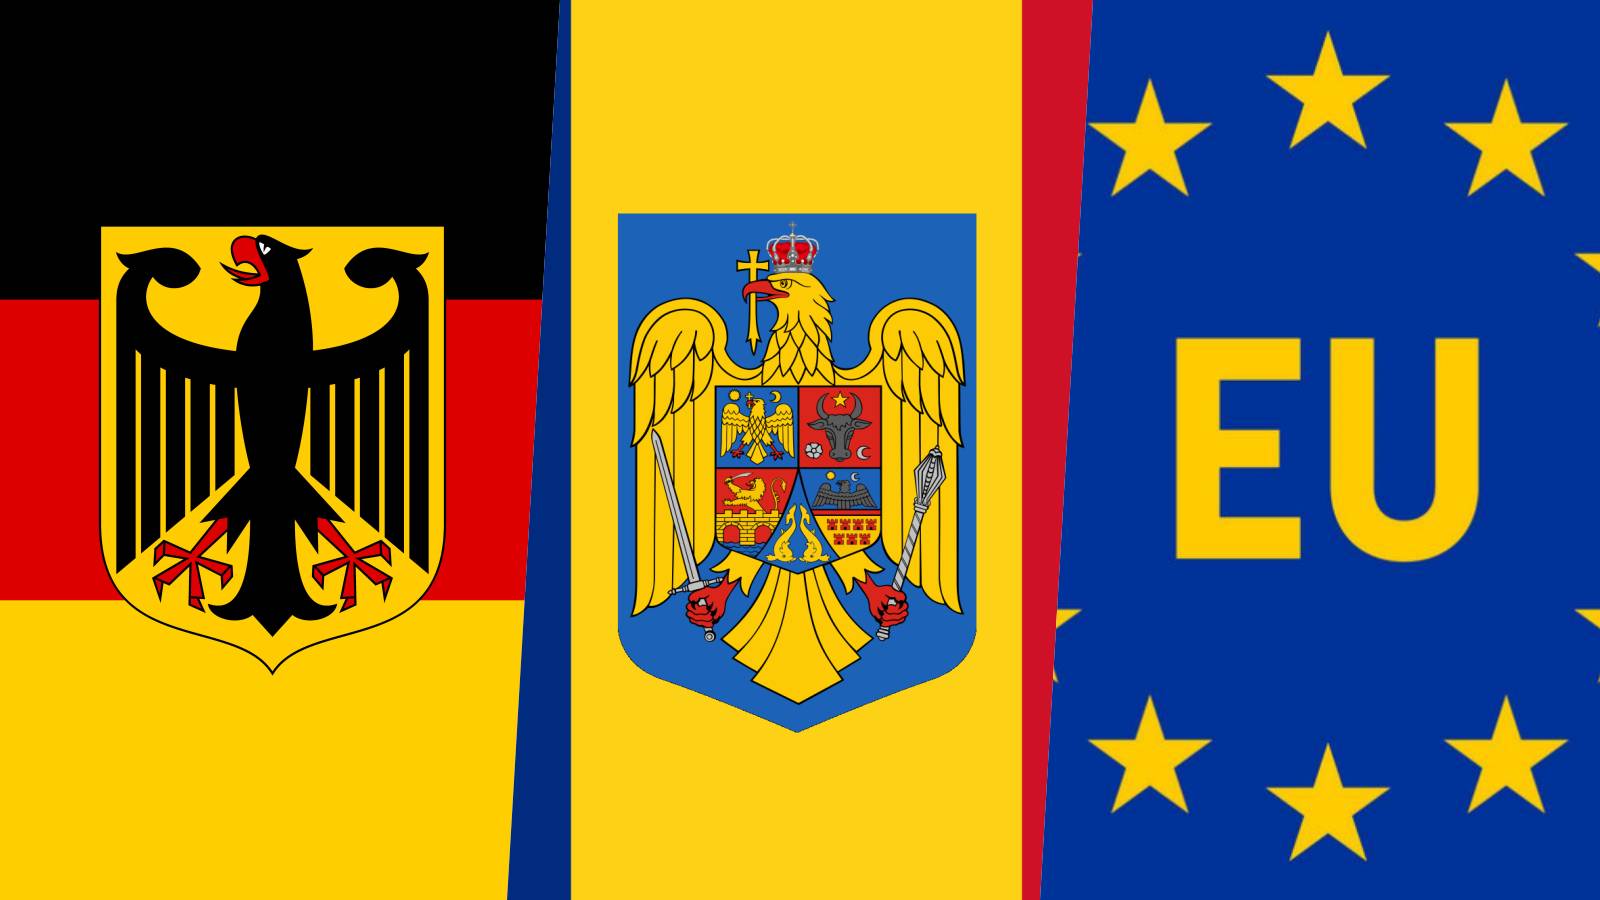 Germania Serioase INGRIJORARI ULTIMA ORA Anunt Berlinului Schengen Blocarea Romaniei